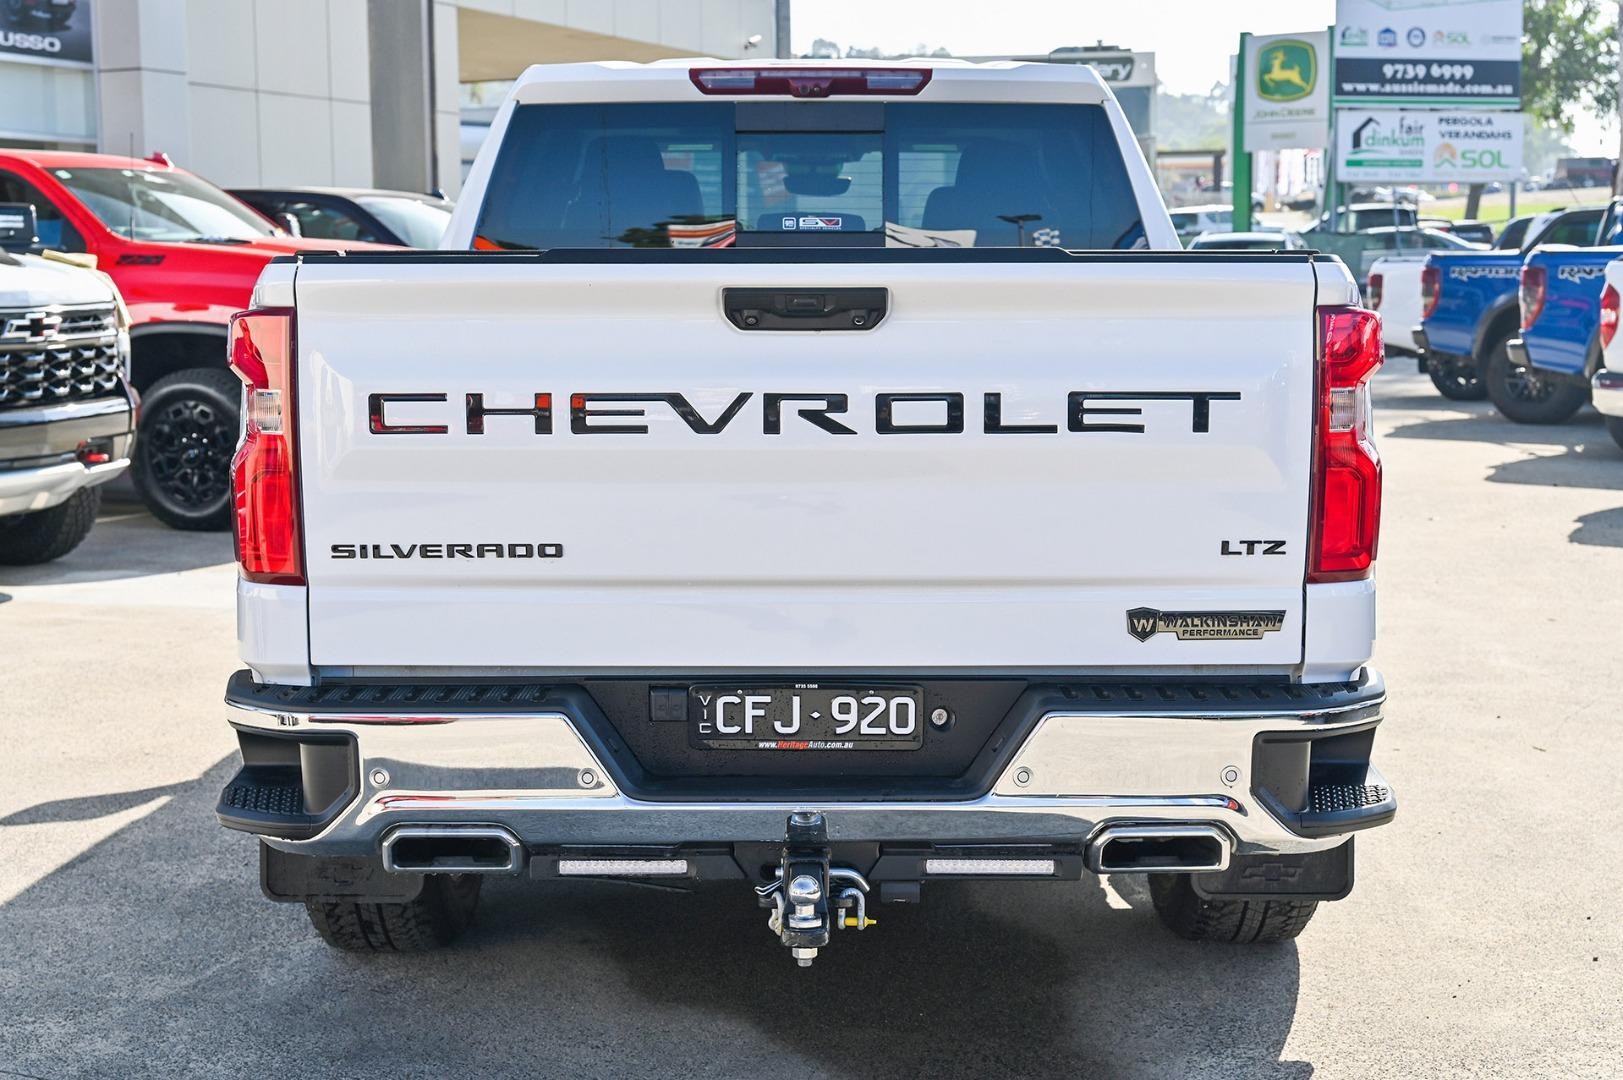 Chevrolet Silverado image 3